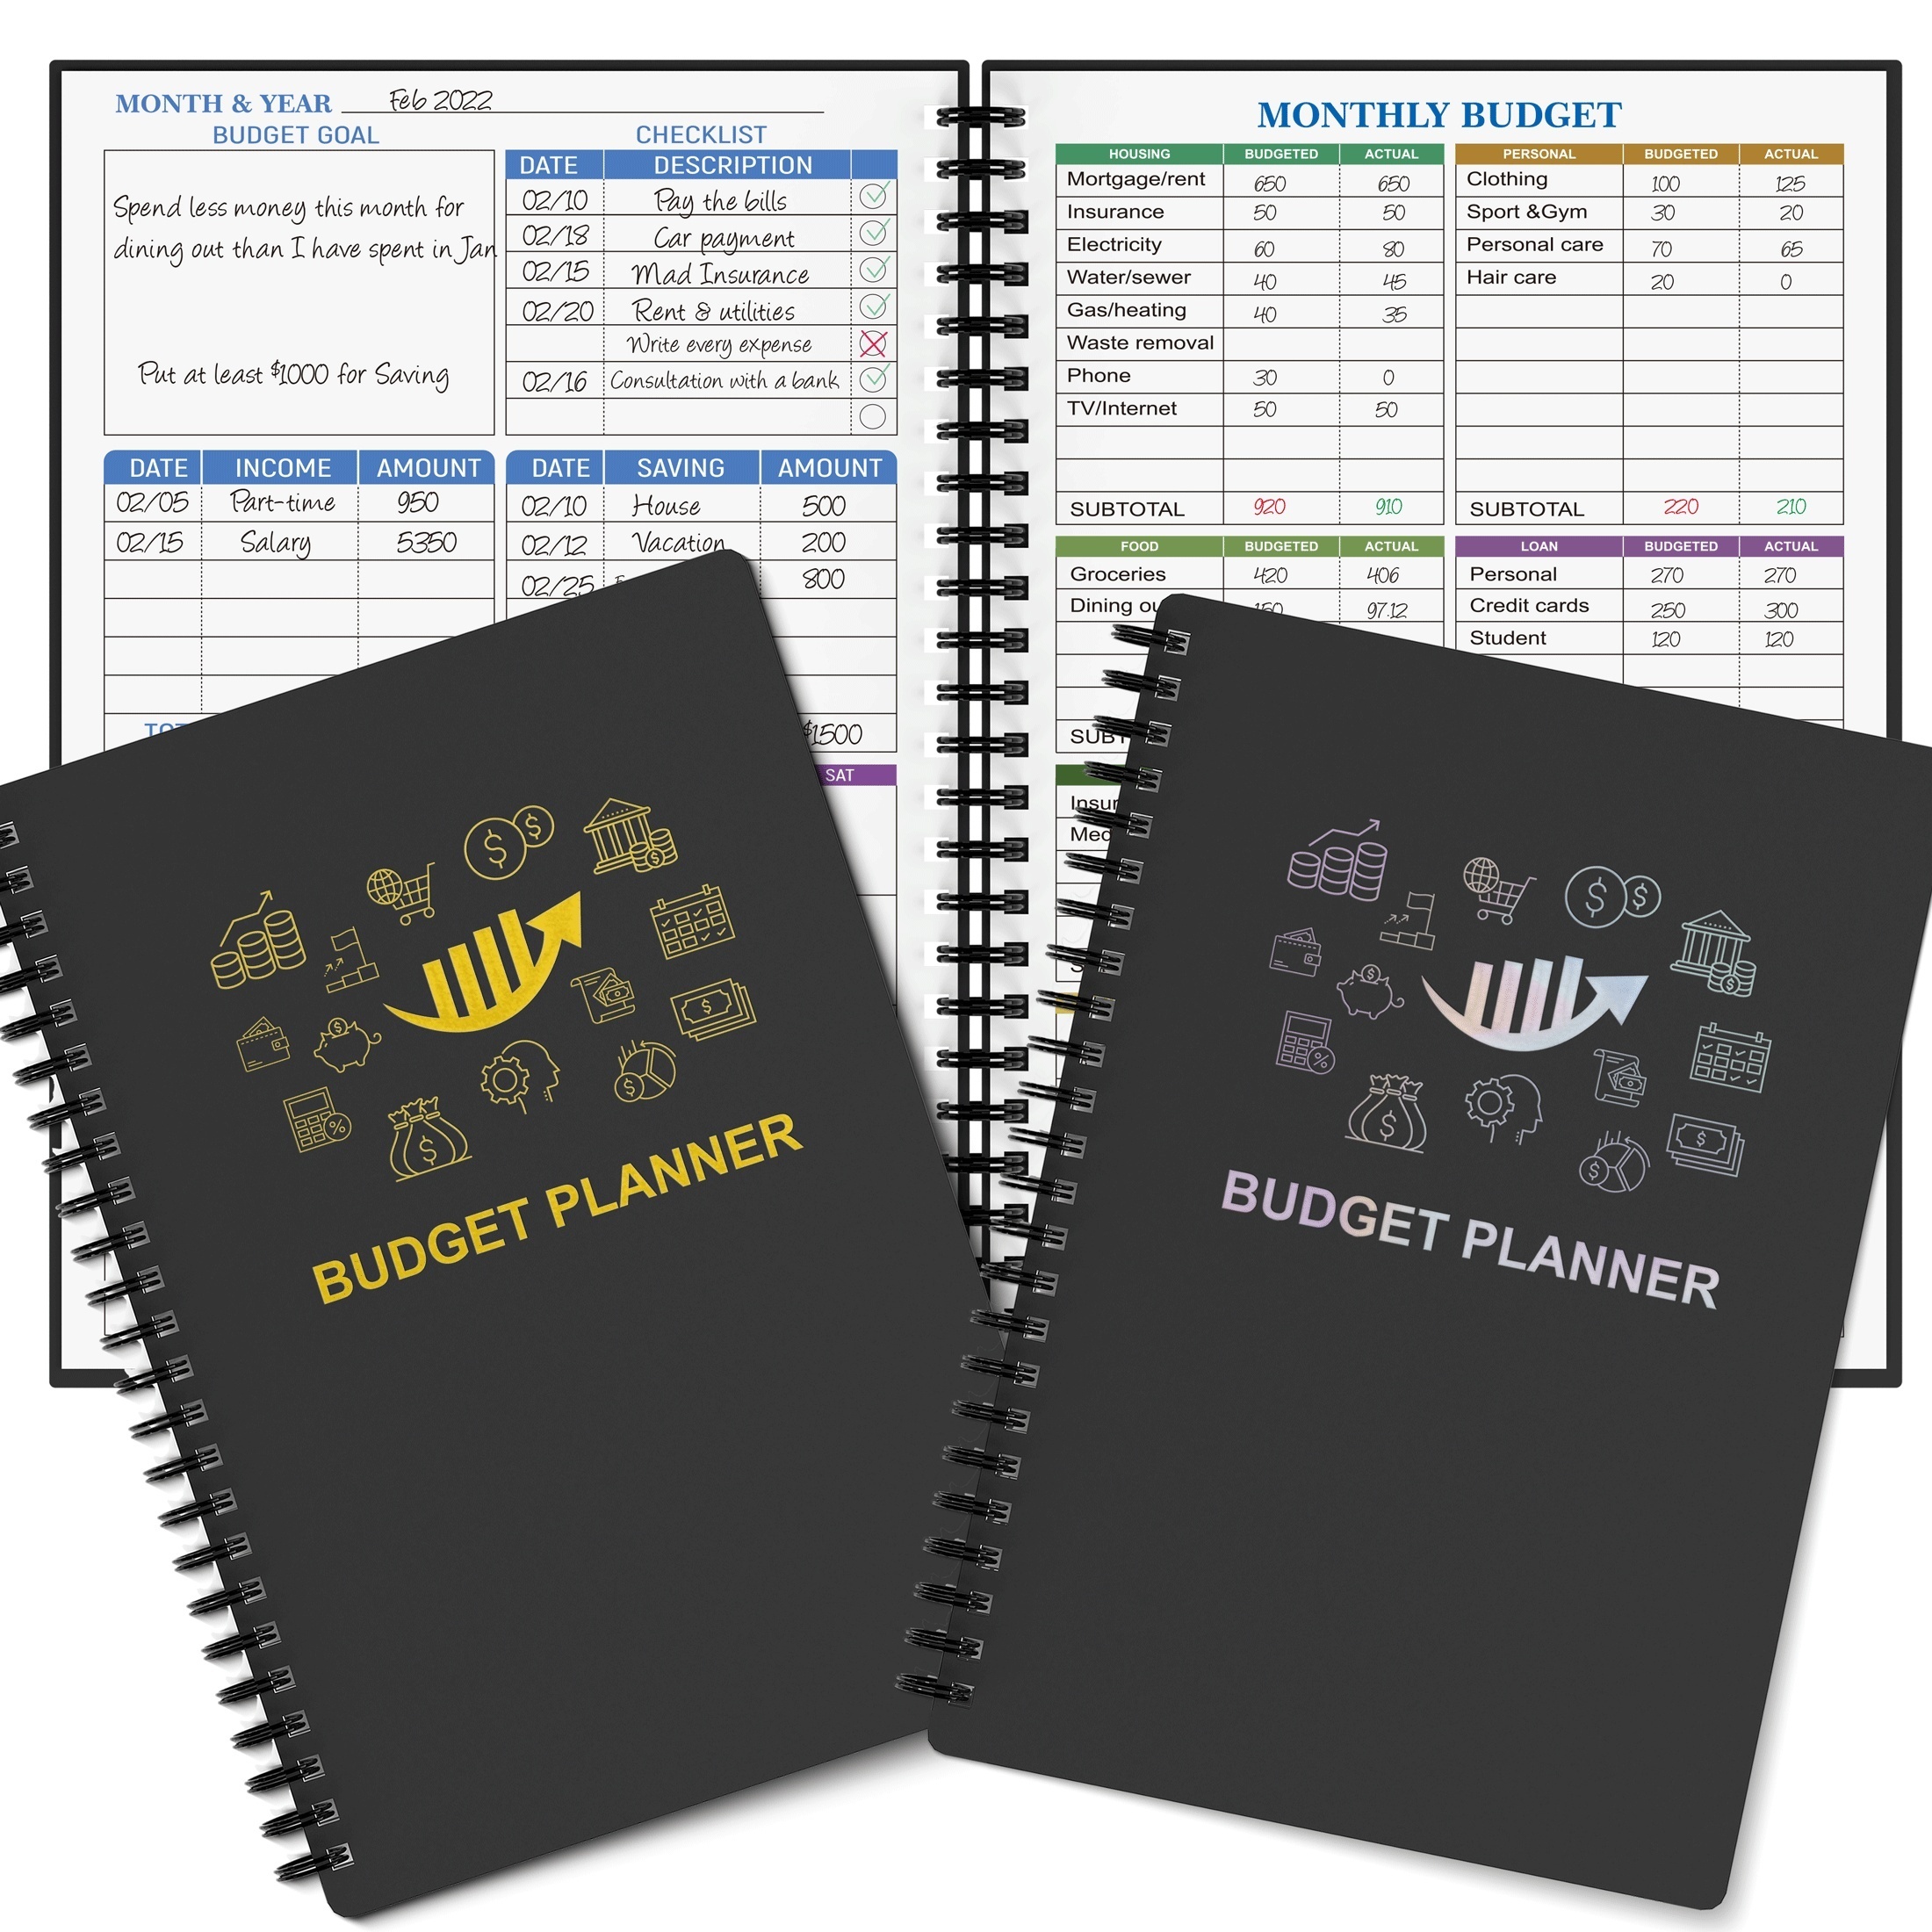 Aocii Carpeta Presupuestaria Planificador de Presupuesto Español - Carpeta  de Presupuesto, Agenda para Ahorrar Dinero, Con Diseños En Español